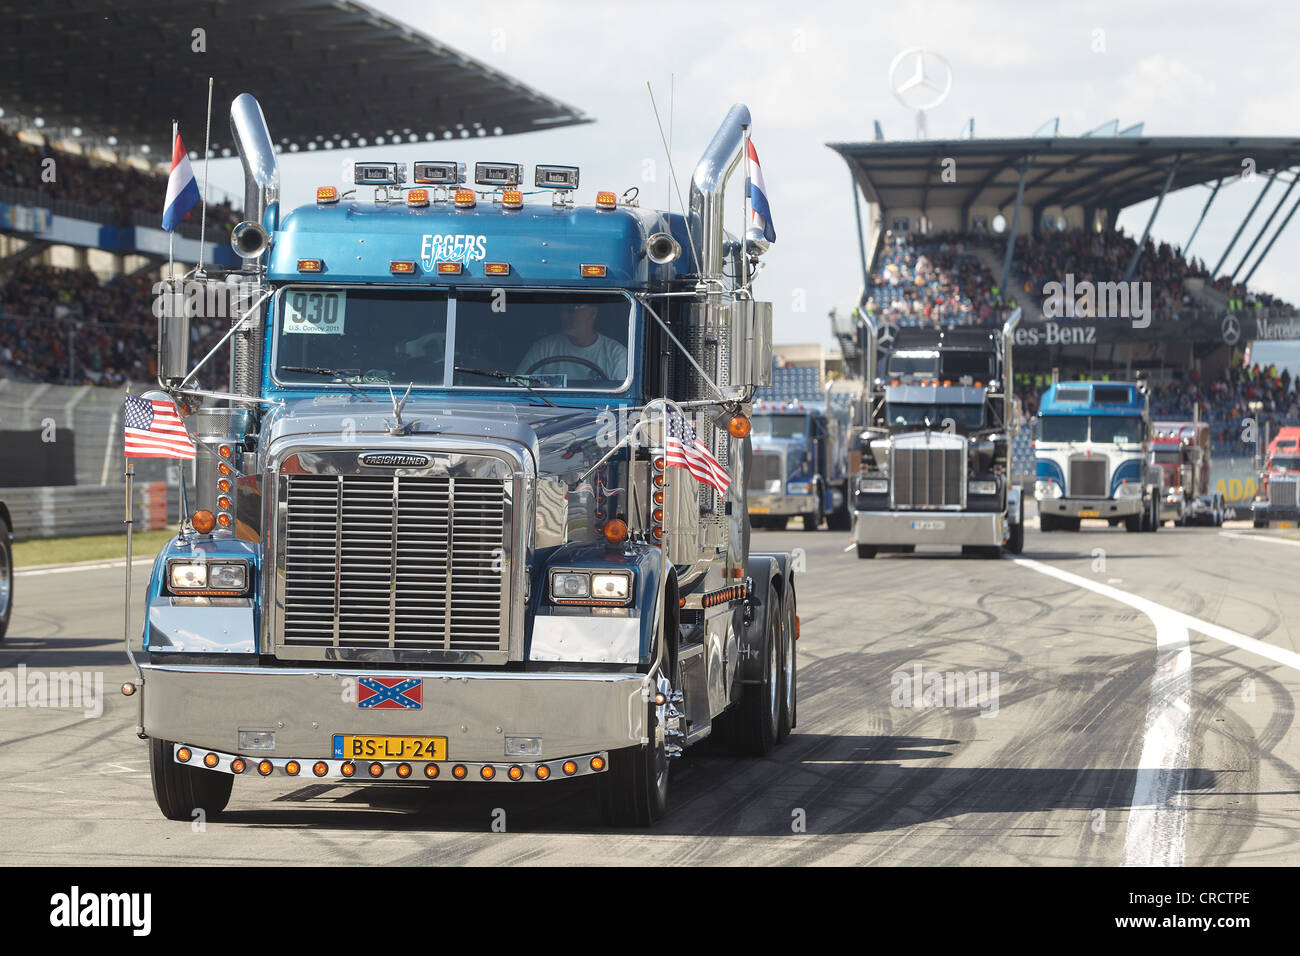 Défilé des camions américains au Grand Prix camion sur la piste de course de Nürburgring, Rhénanie-Palatinat, Allemagne, Europe Banque D'Images